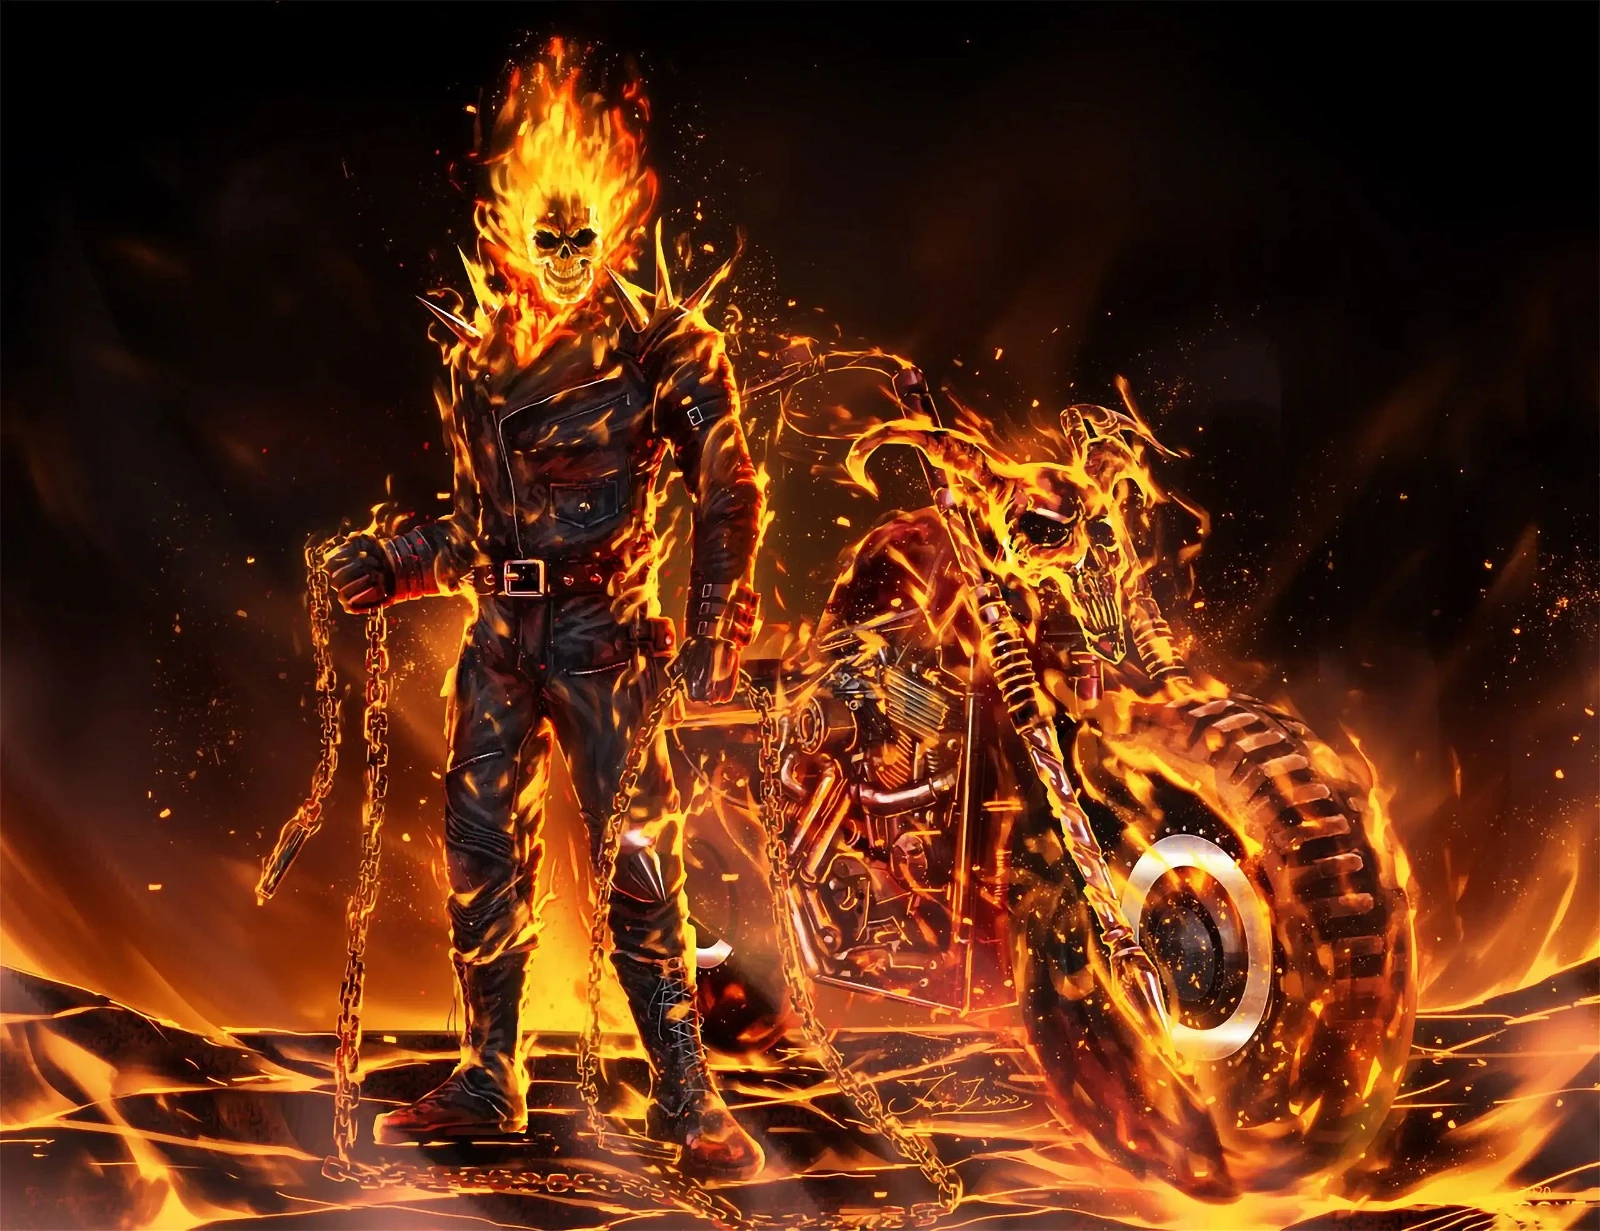 Marvel's Spirit of Vengeance: The Ghost Rider